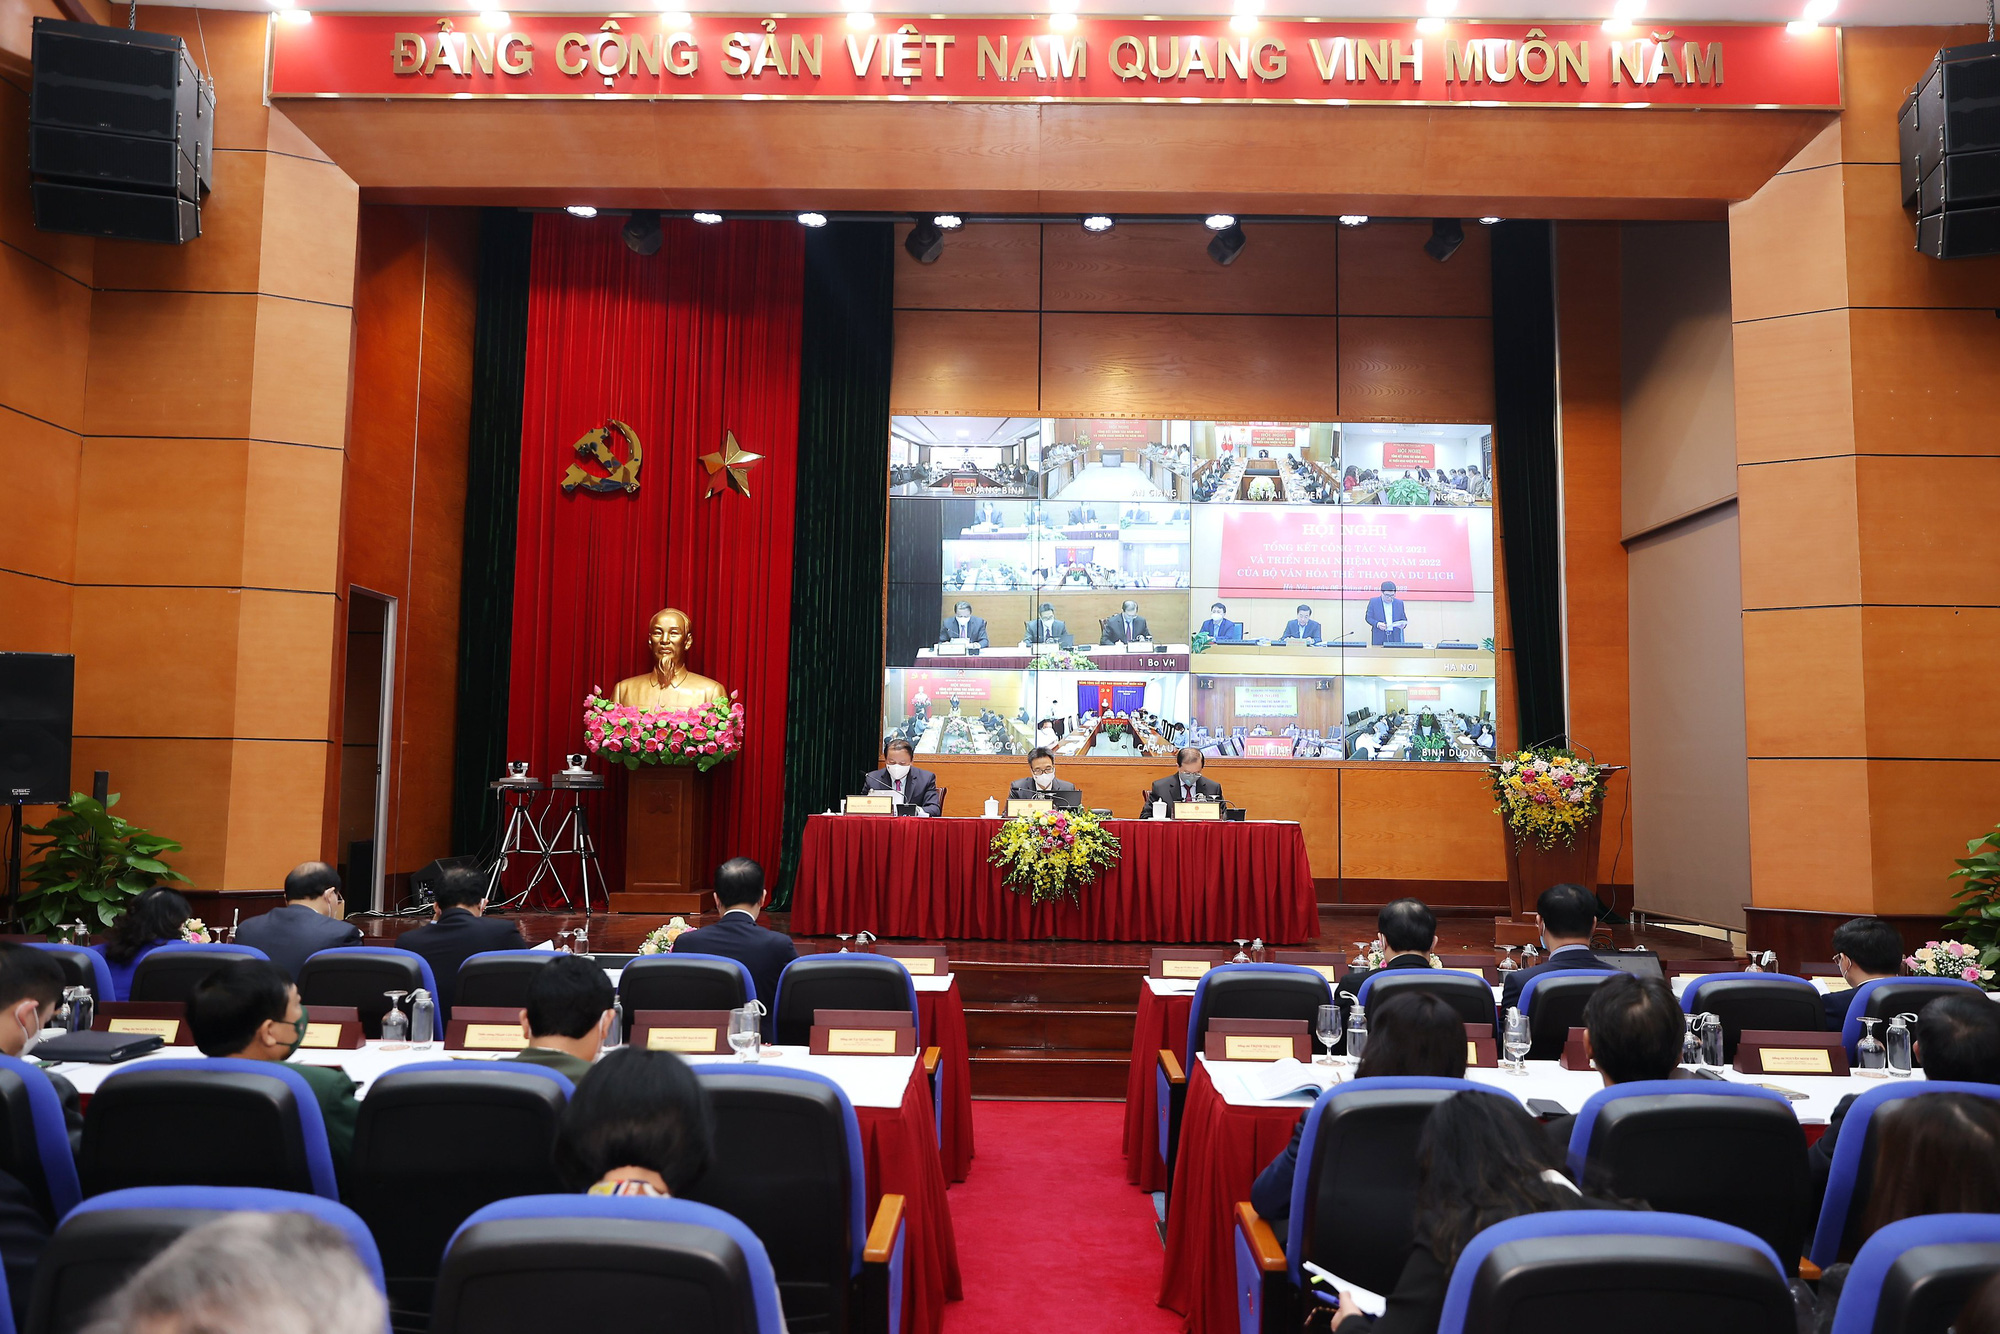 Phó Thủ tướng: “Phải tiếp tục phát huy được truyền thống văn hóa tốt đẹp của con người Việt Nam như lúc khó khăn, dịch bệnh” - Ảnh 7.